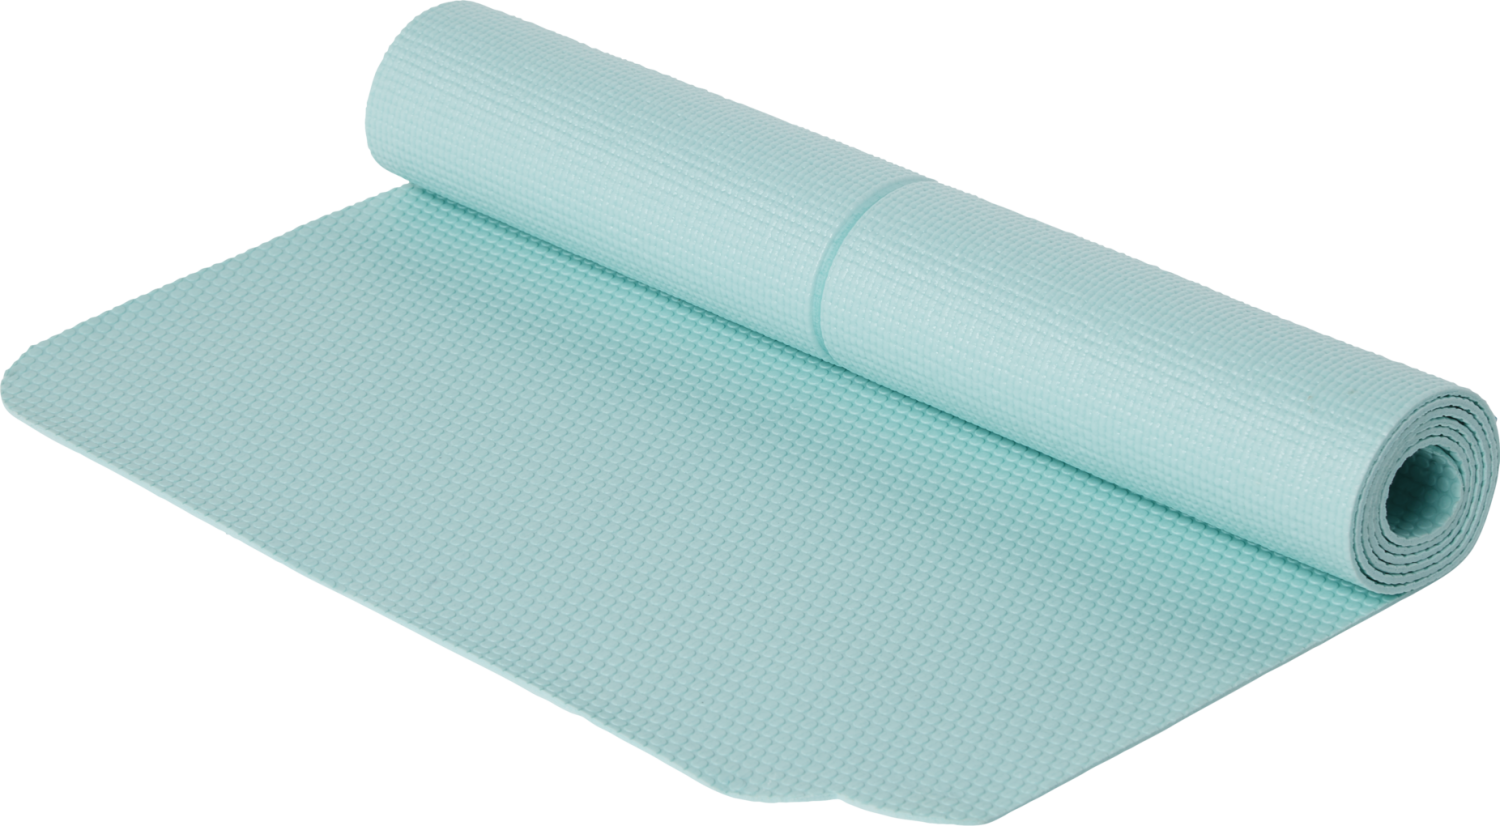 Energetics 2farbig Yogamatte Matte Bodenmatte versch Farben 171x60x0,6cm NEU OVP 